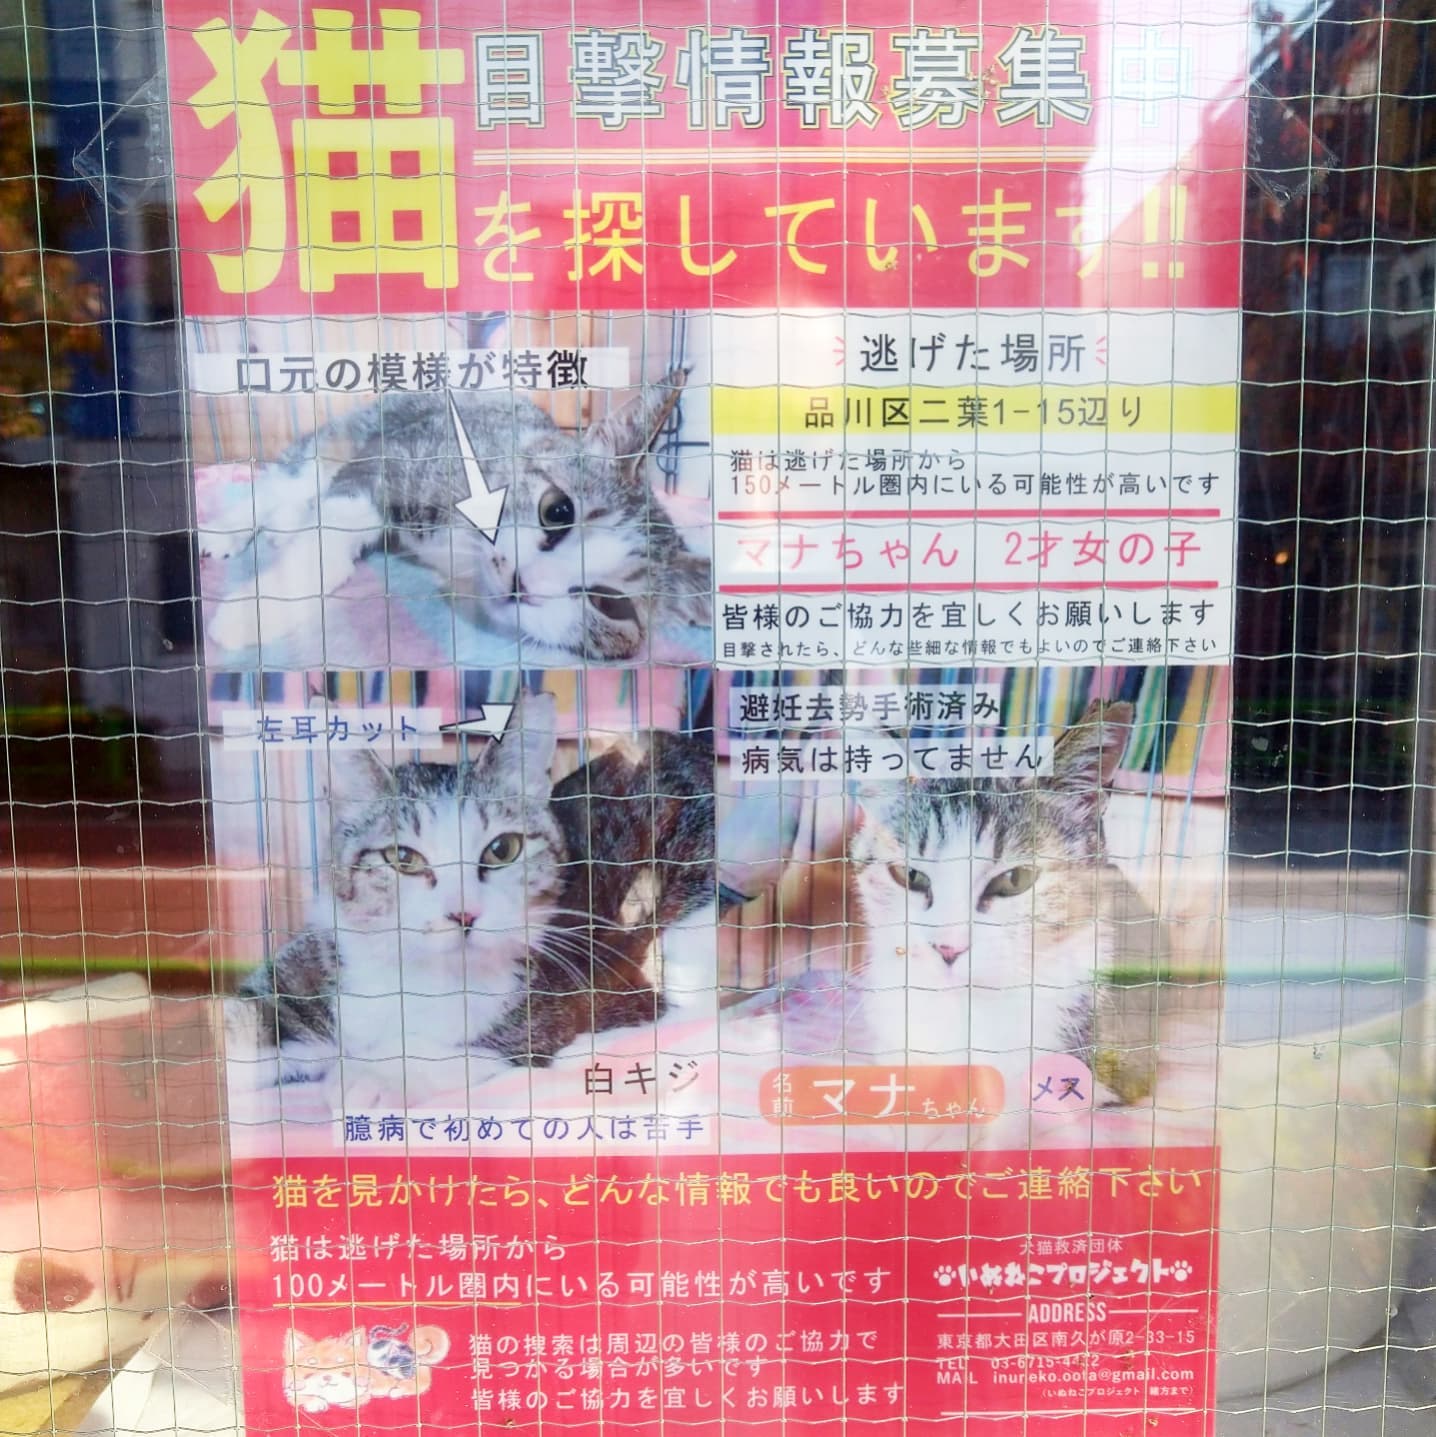 #武蔵小山情報 #迷い猫 保護猫シェルターにゃんだん邸さんの店頭猫ニュース！迷い猫と里親が見つかりますように。西小山のロータリー出て碑文谷方面に進んですぐにある保護猫施設。今度オープンしてる時に前通ったらカリカリ代でも寄付しに行こうと思います。#武蔵小山 #西小山#猫 #迷い猫探してます #迷い猫さがしてます #迷い猫捜索中 #迷い猫捜索 #猫を探しています #猫探してます #武蔵小山